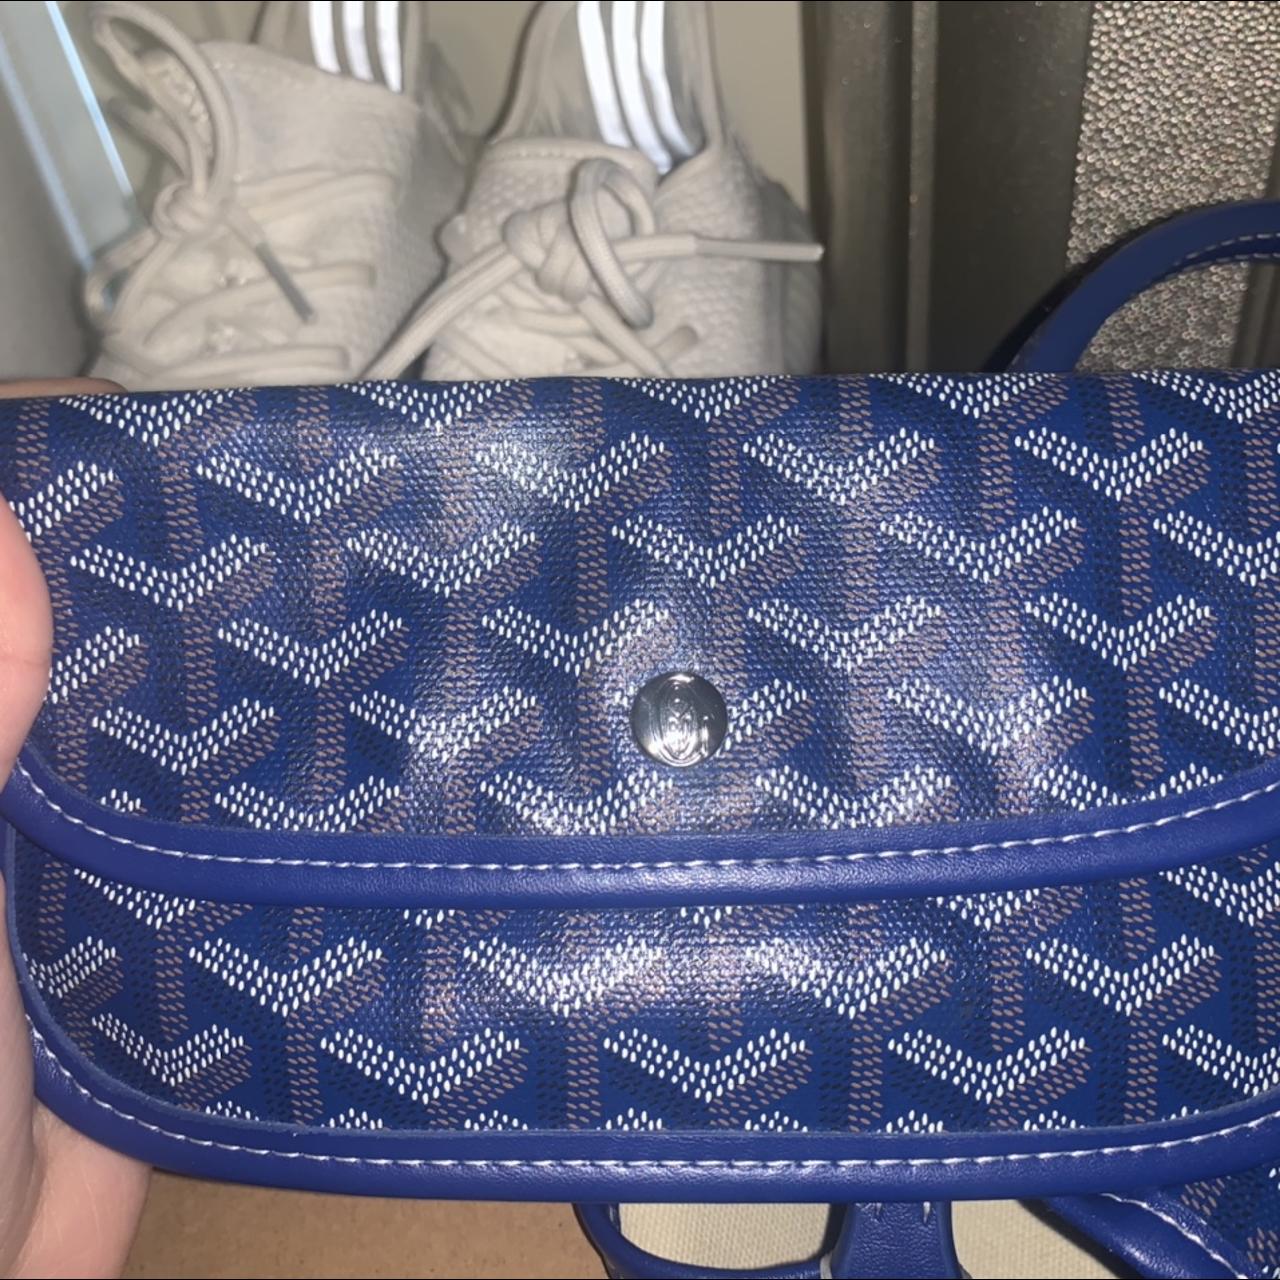 Goyard #Goyard bag Already used, but it looks - Depop